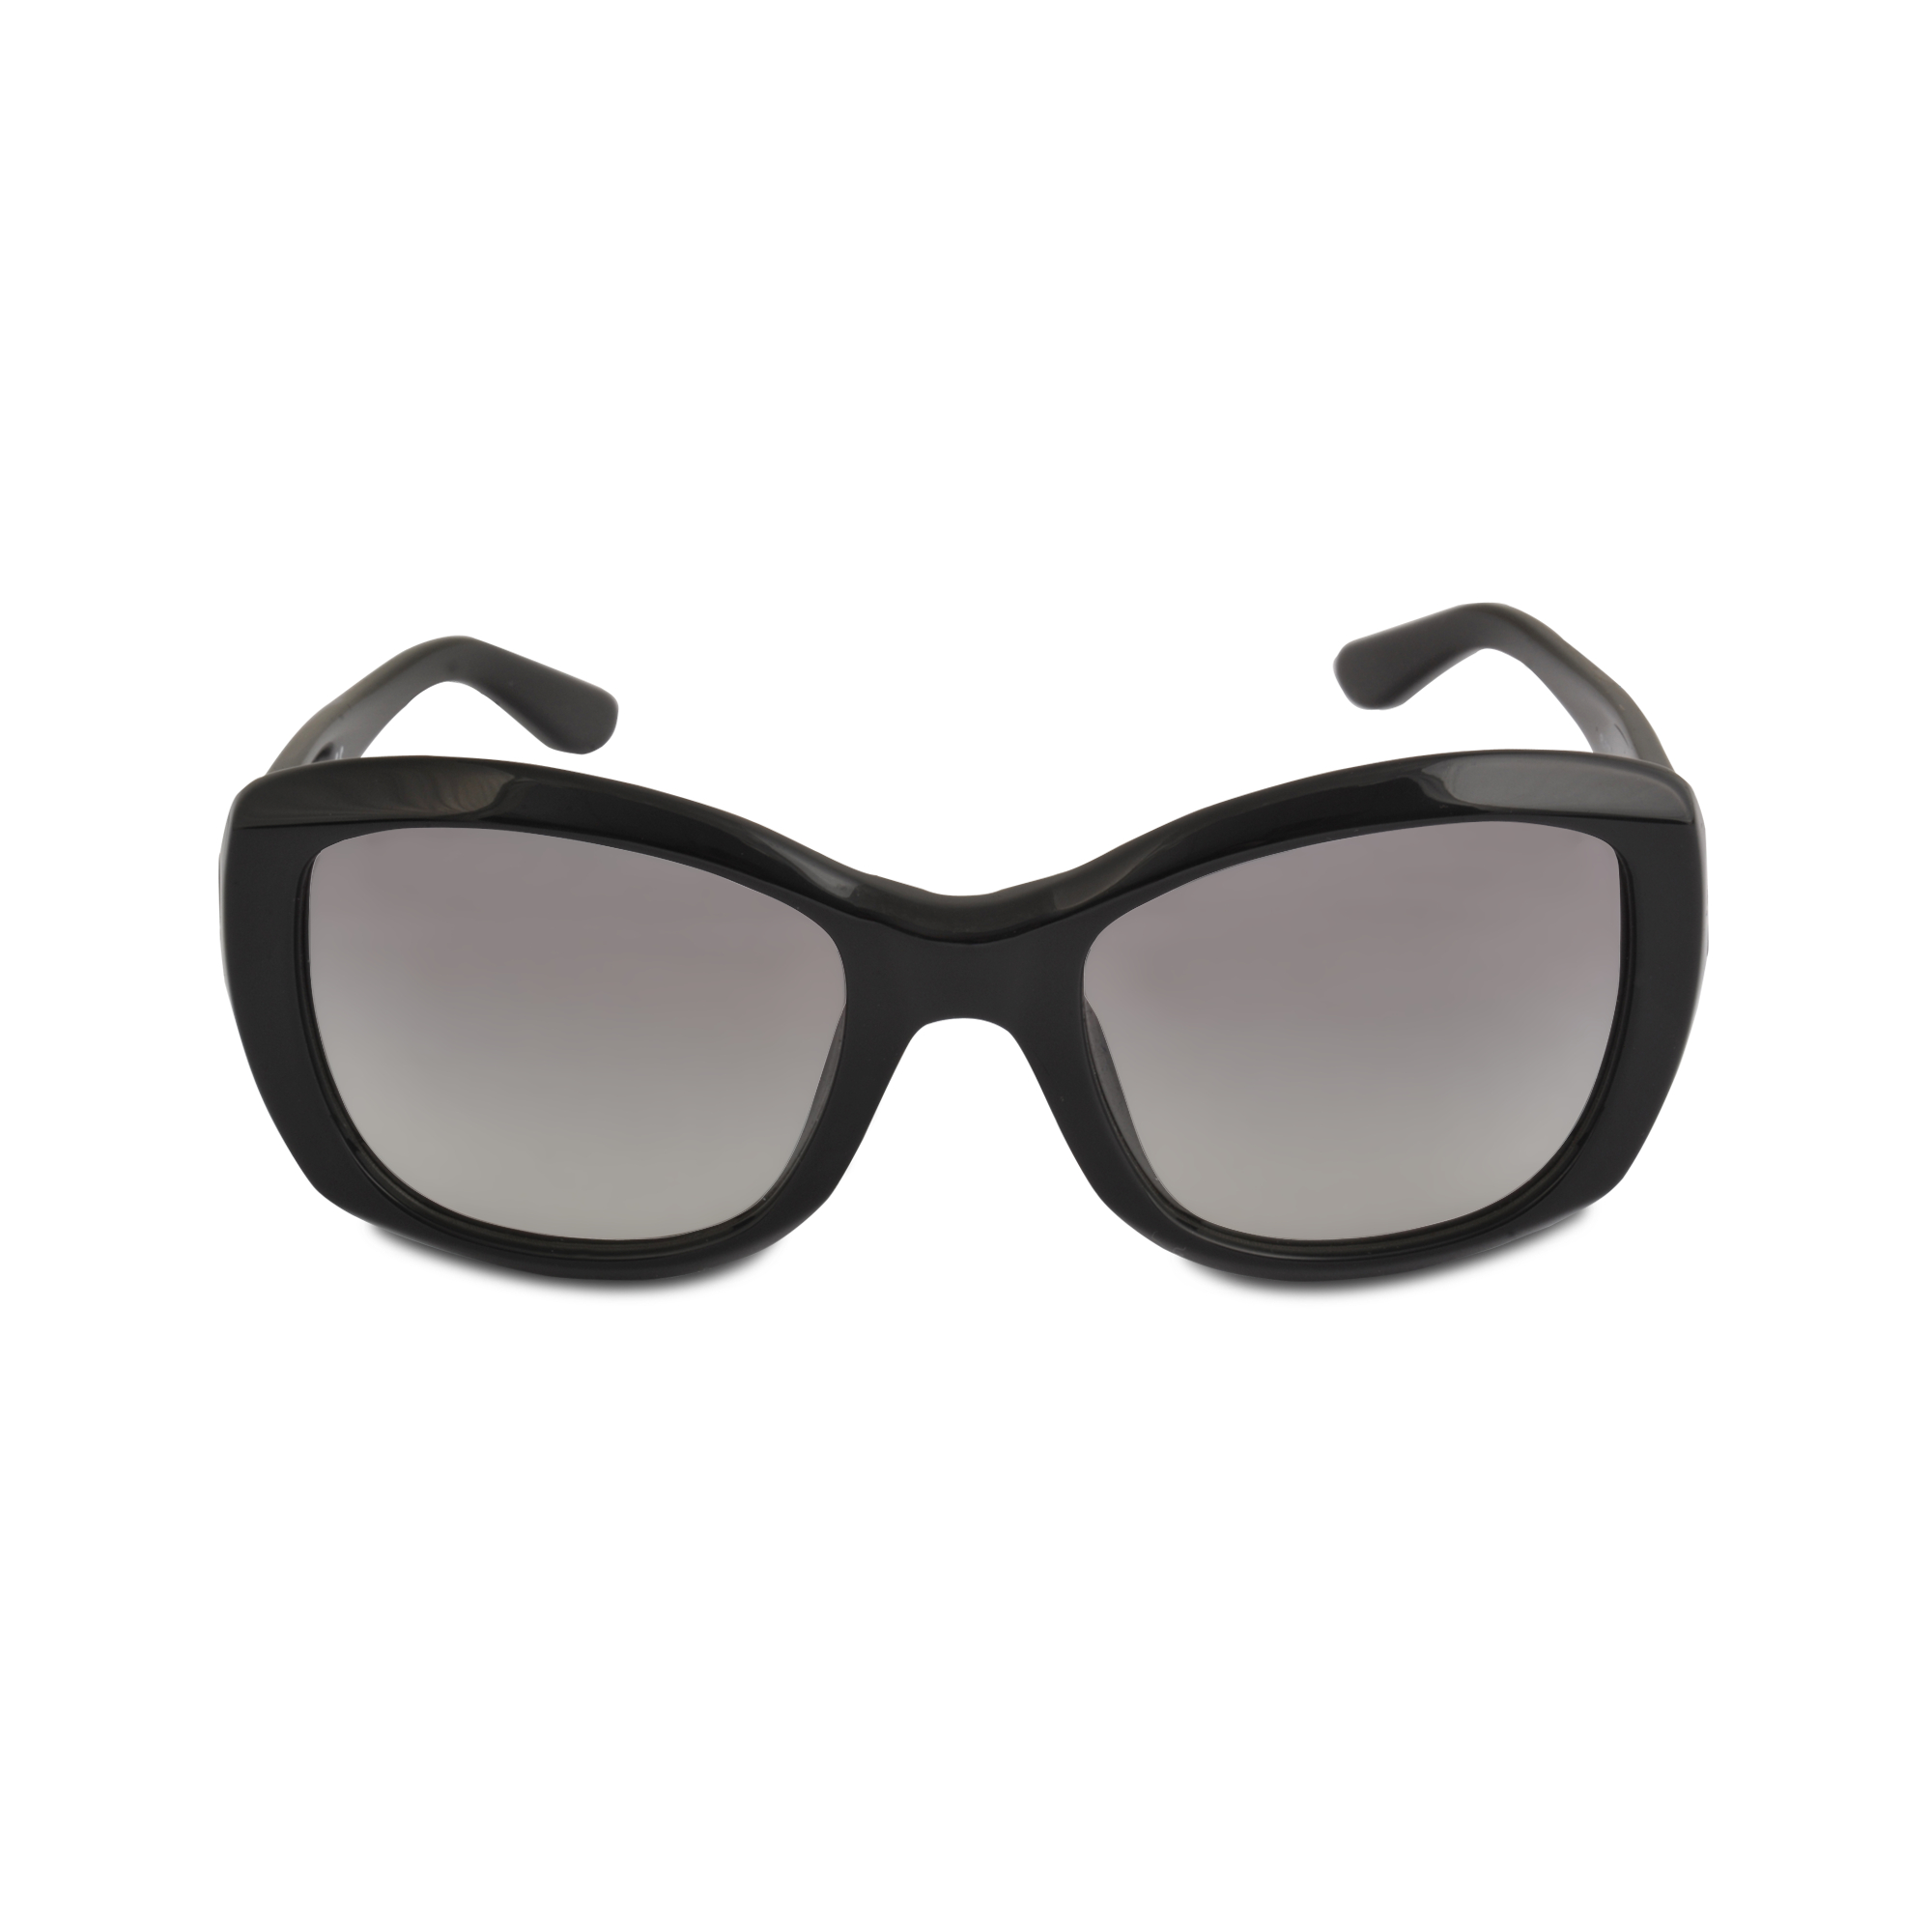 Ralph lauren Sunglasses Black Rl8132 in Black | Lyst